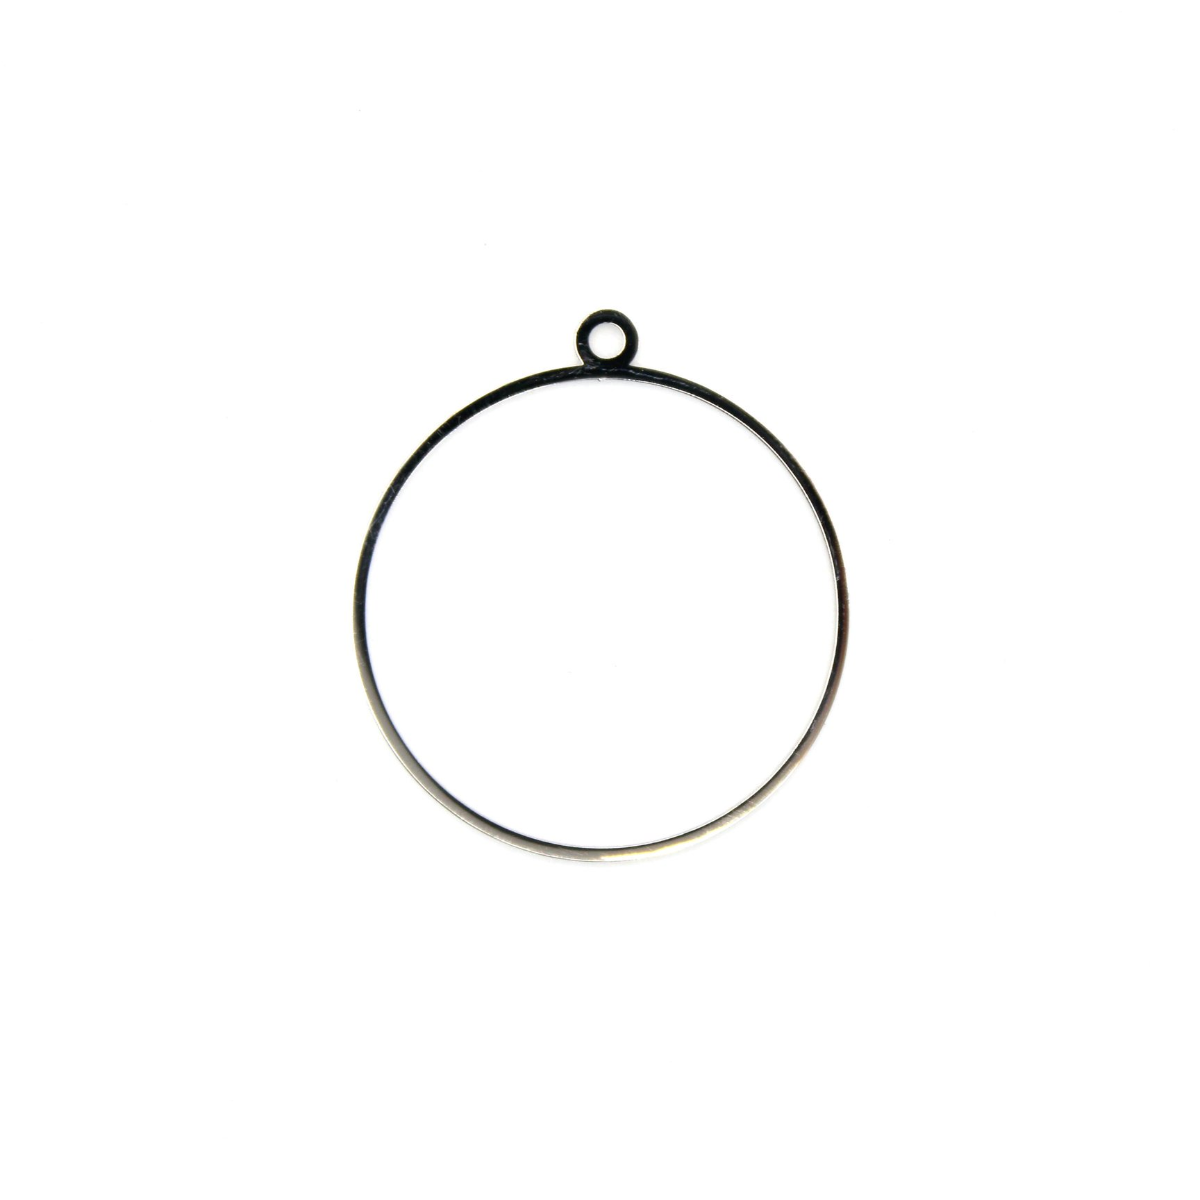 Handgefertigte offene Lünette aus Edelstahl von Mushy Design
 Form-Kreis